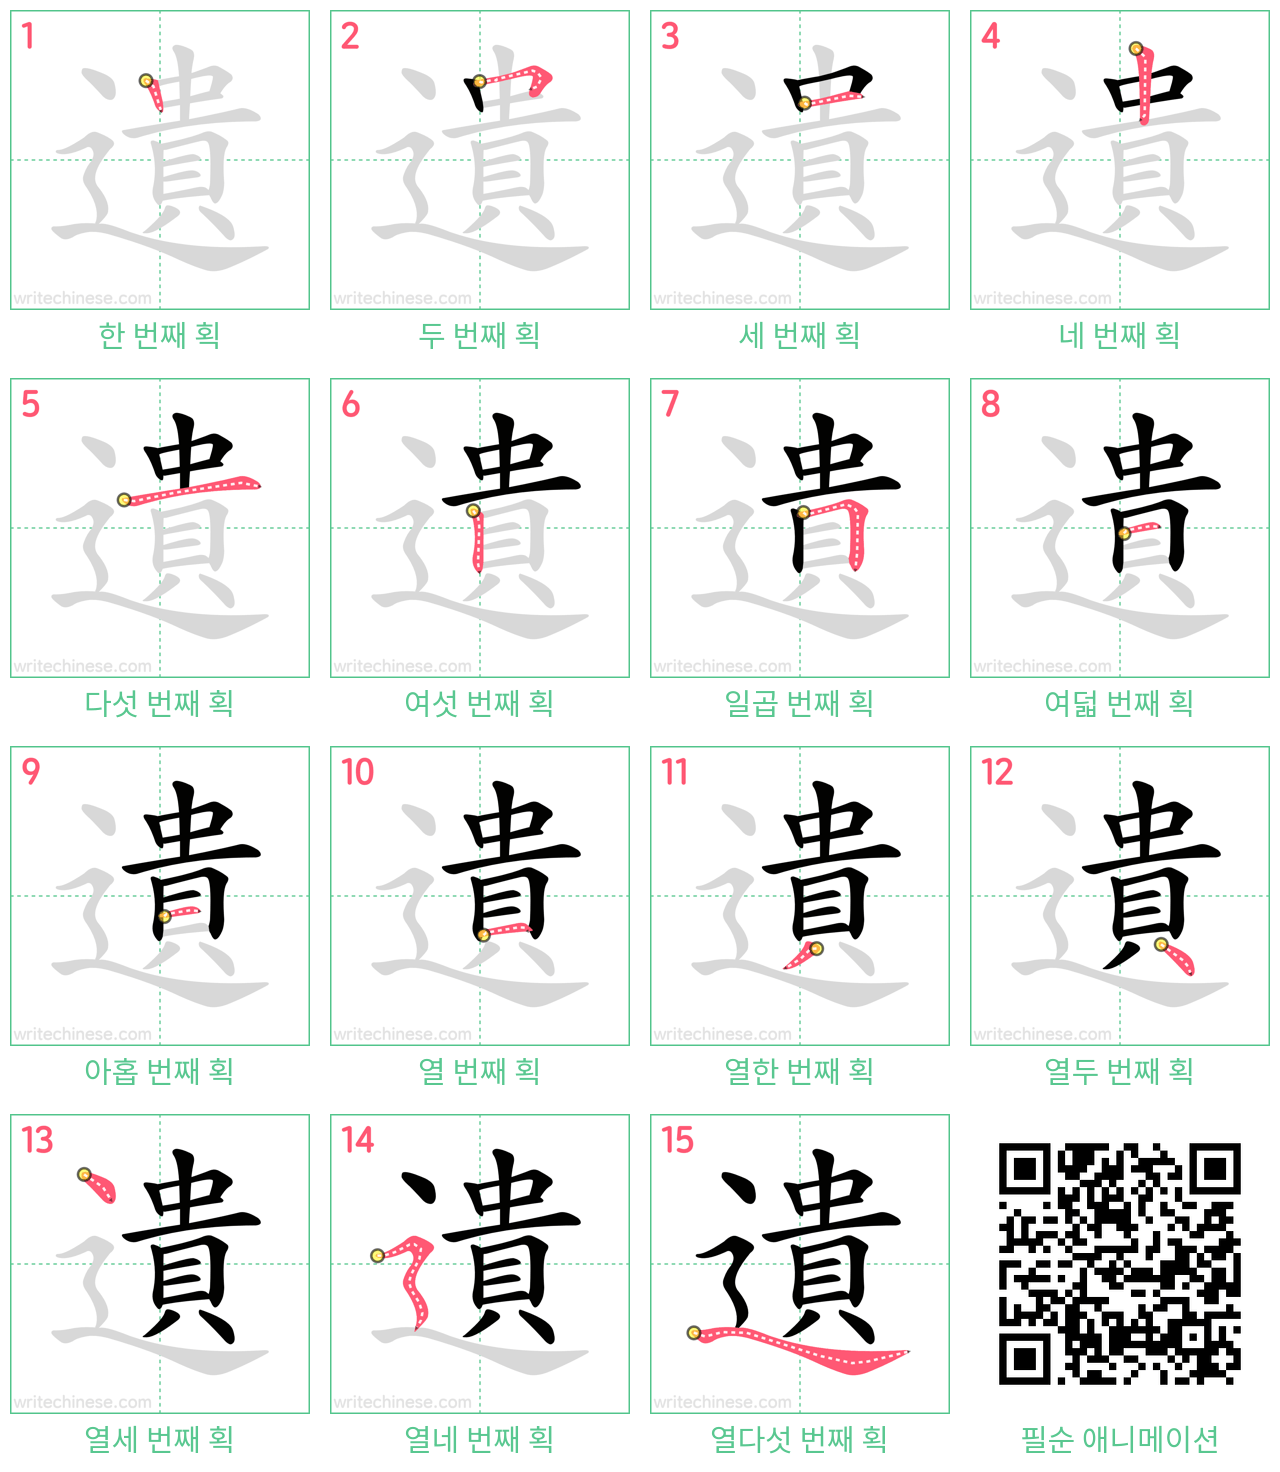 遺 step-by-step stroke order diagrams